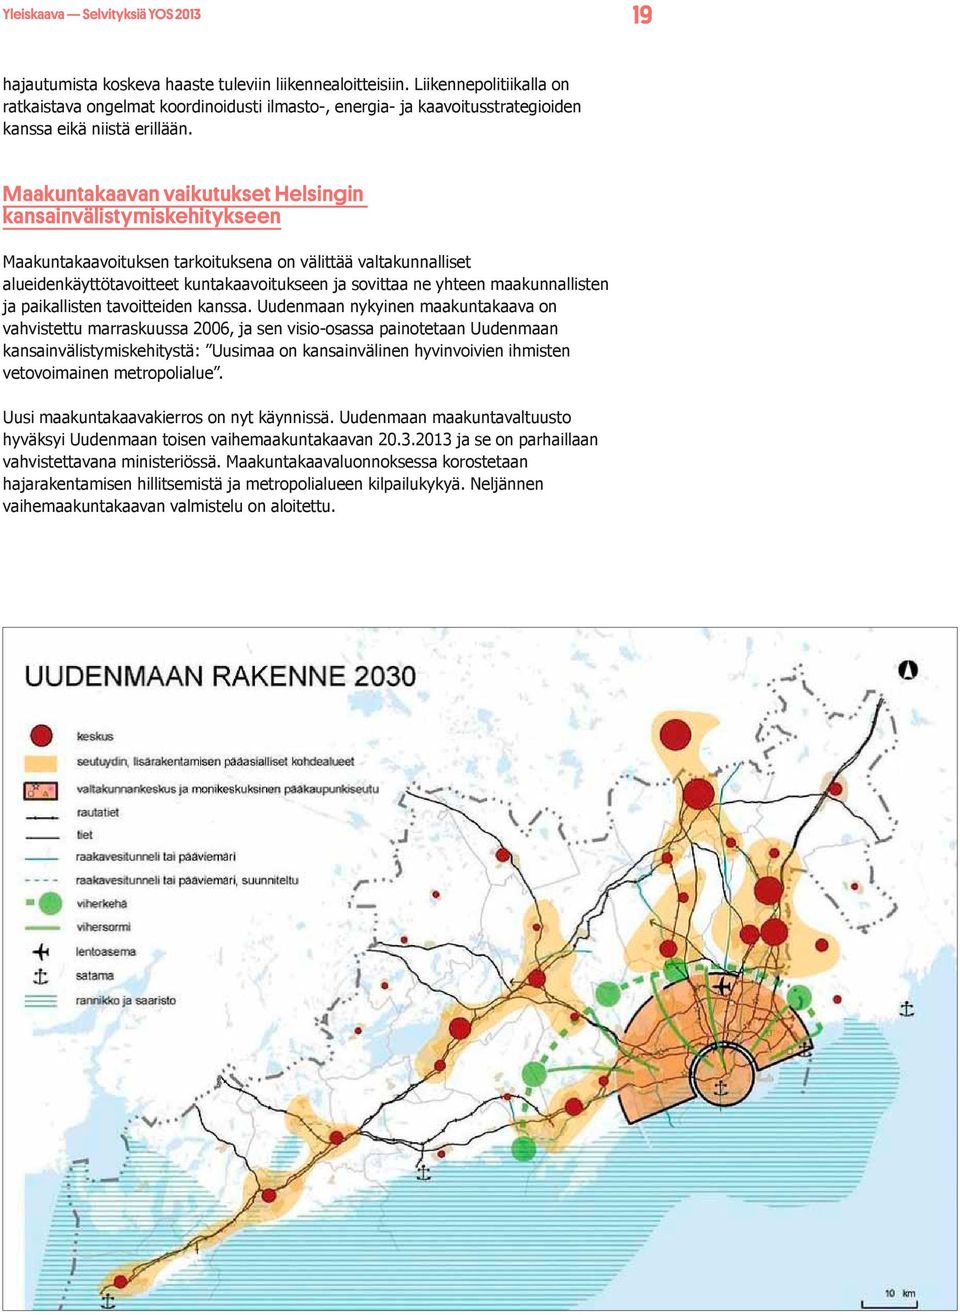 Maakuntakaavan vaikutukset Helsingin kansainvälistymiskehitykseen Maakuntakaavoituksen tarkoituksena on välittää valtakunnalliset alueidenkäyttötavoitteet kuntakaavoitukseen ja sovittaa ne yhteen